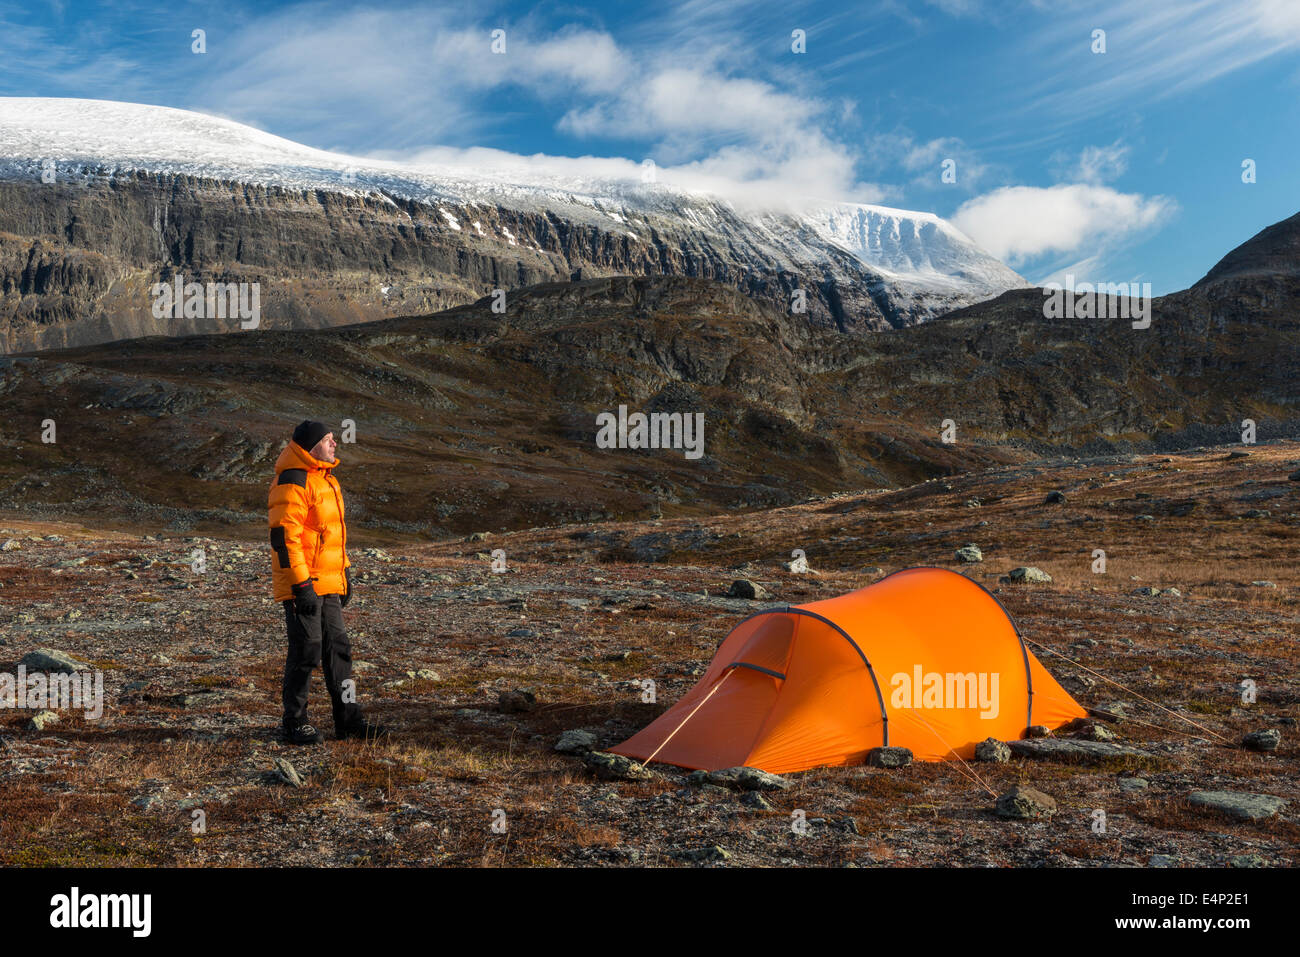 Mann neben Zelt mit Blick auf den Berg Sinnitjohkka, Kebnekaisefjaell, Norrbotten, Lappland, Schweden Foto Stock